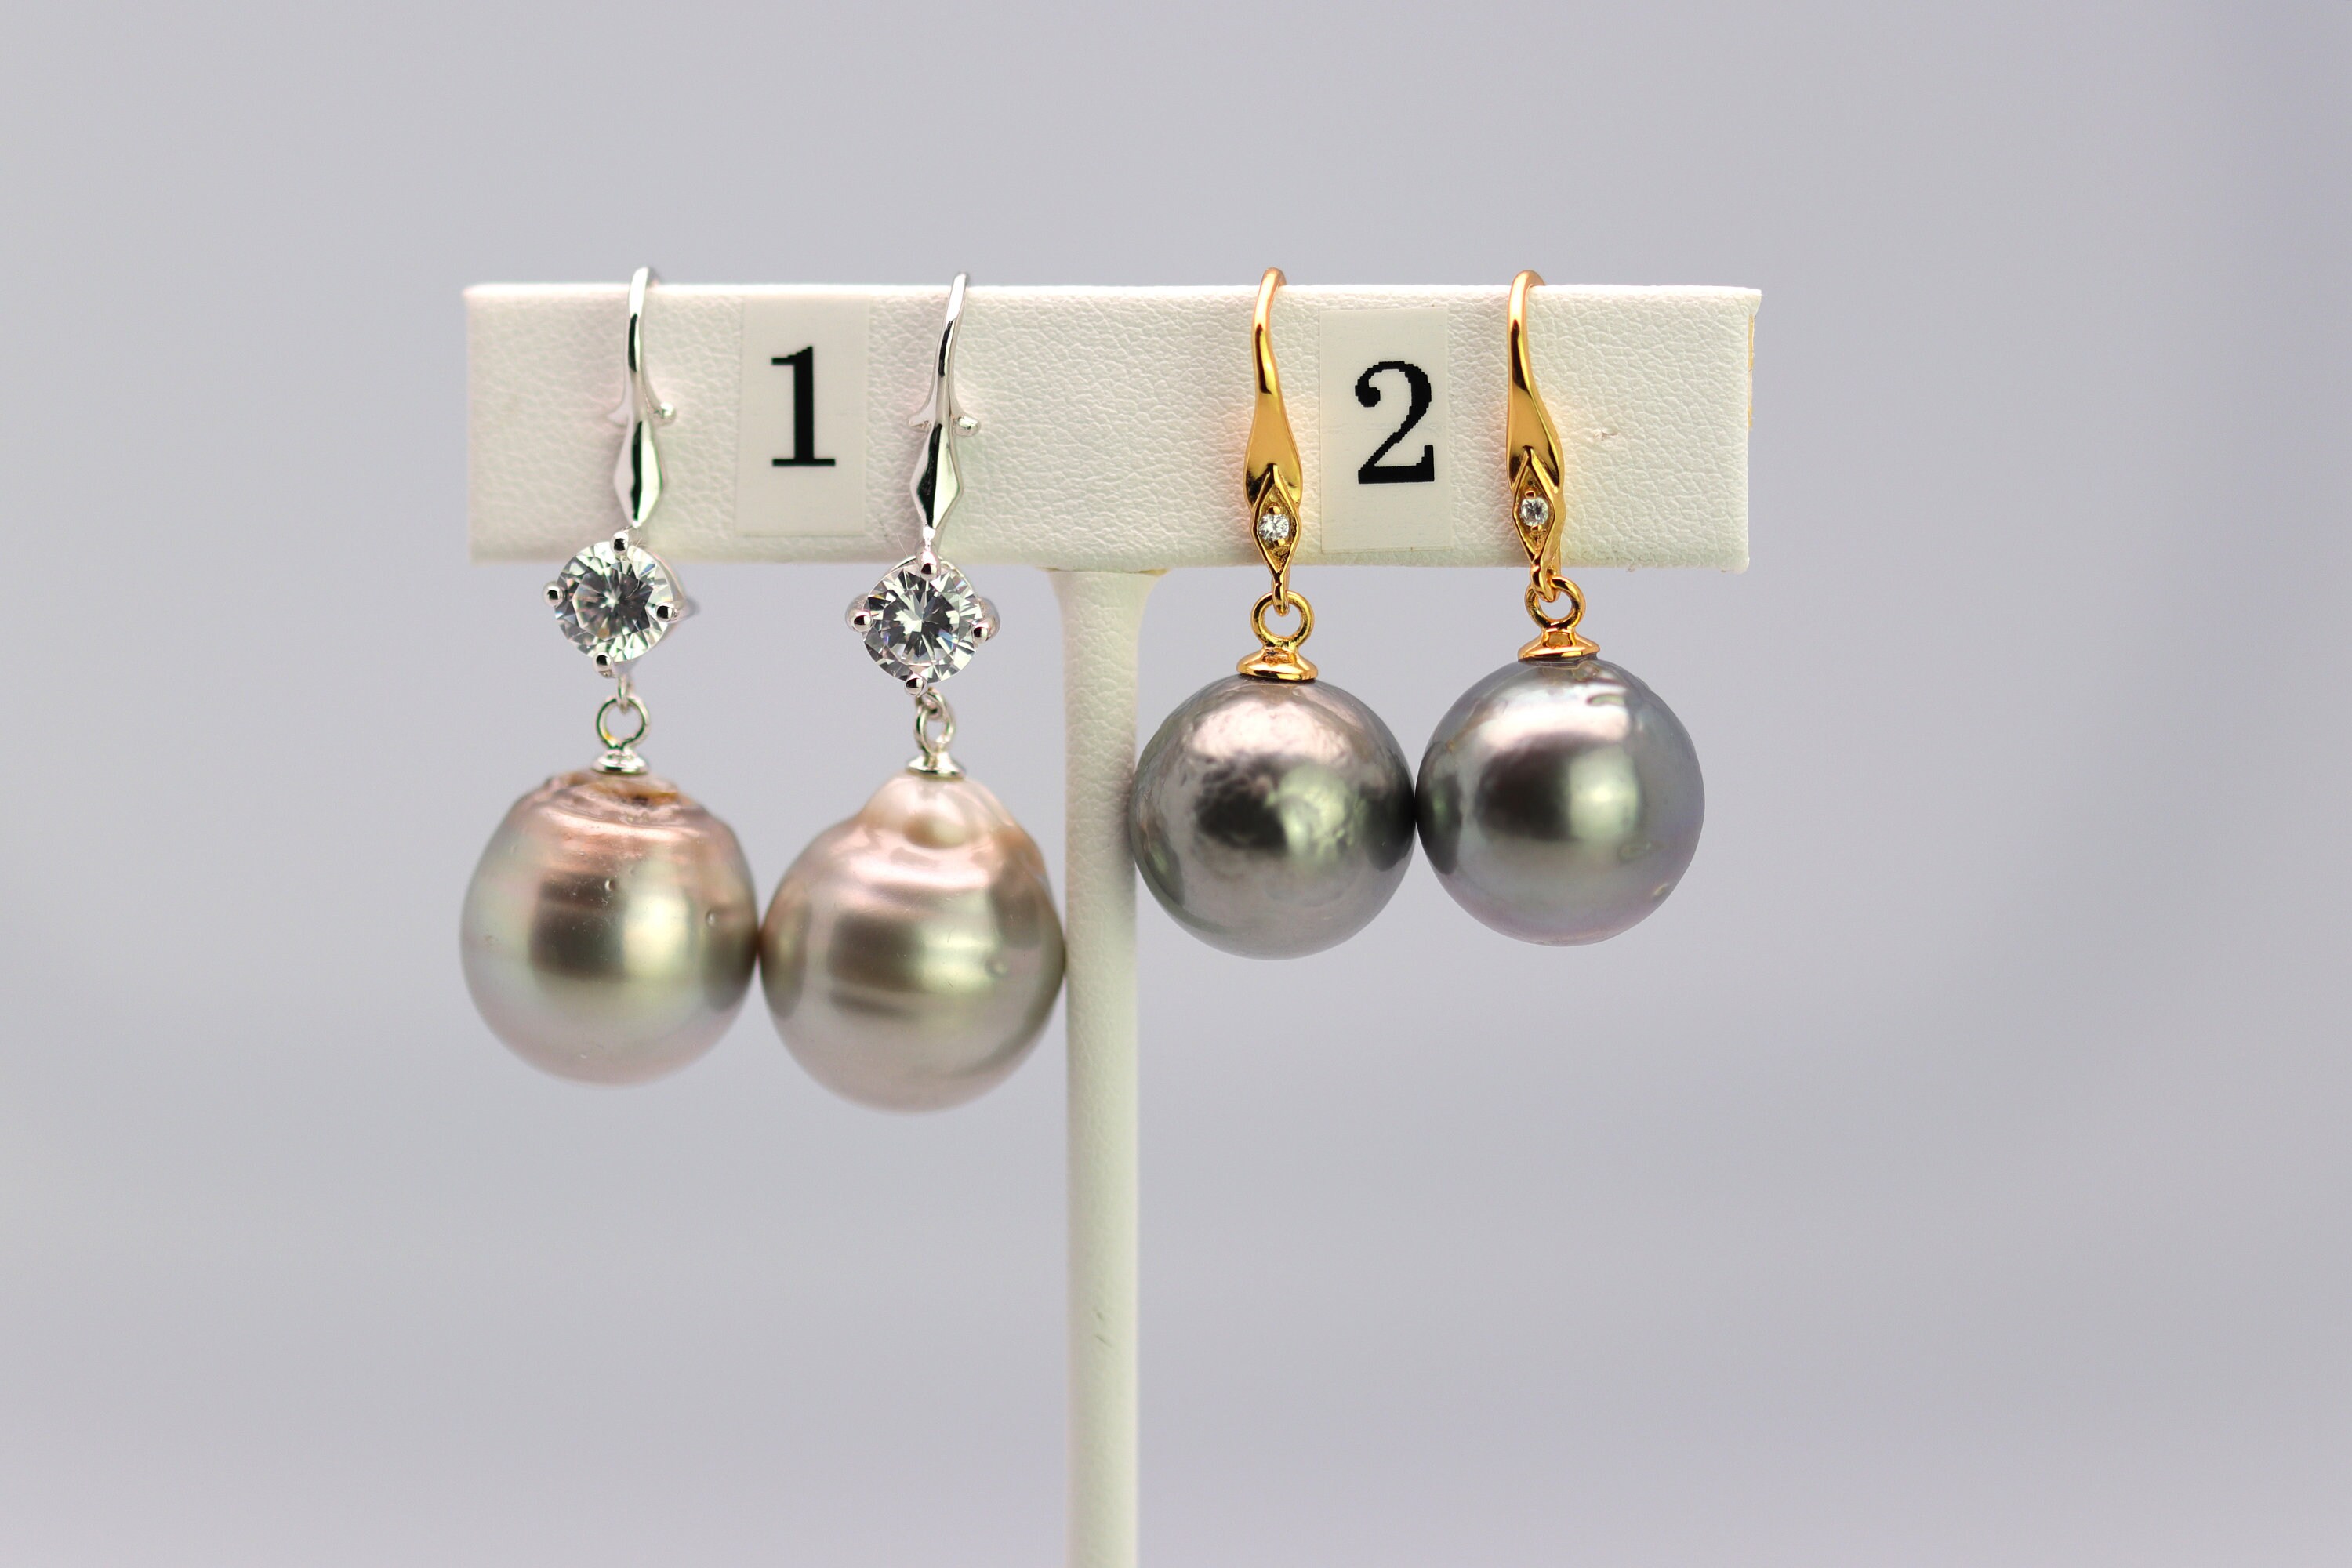 Tahitian Dangle Drop Pearl Earrings in 925 Sterling Silver (SHE015)